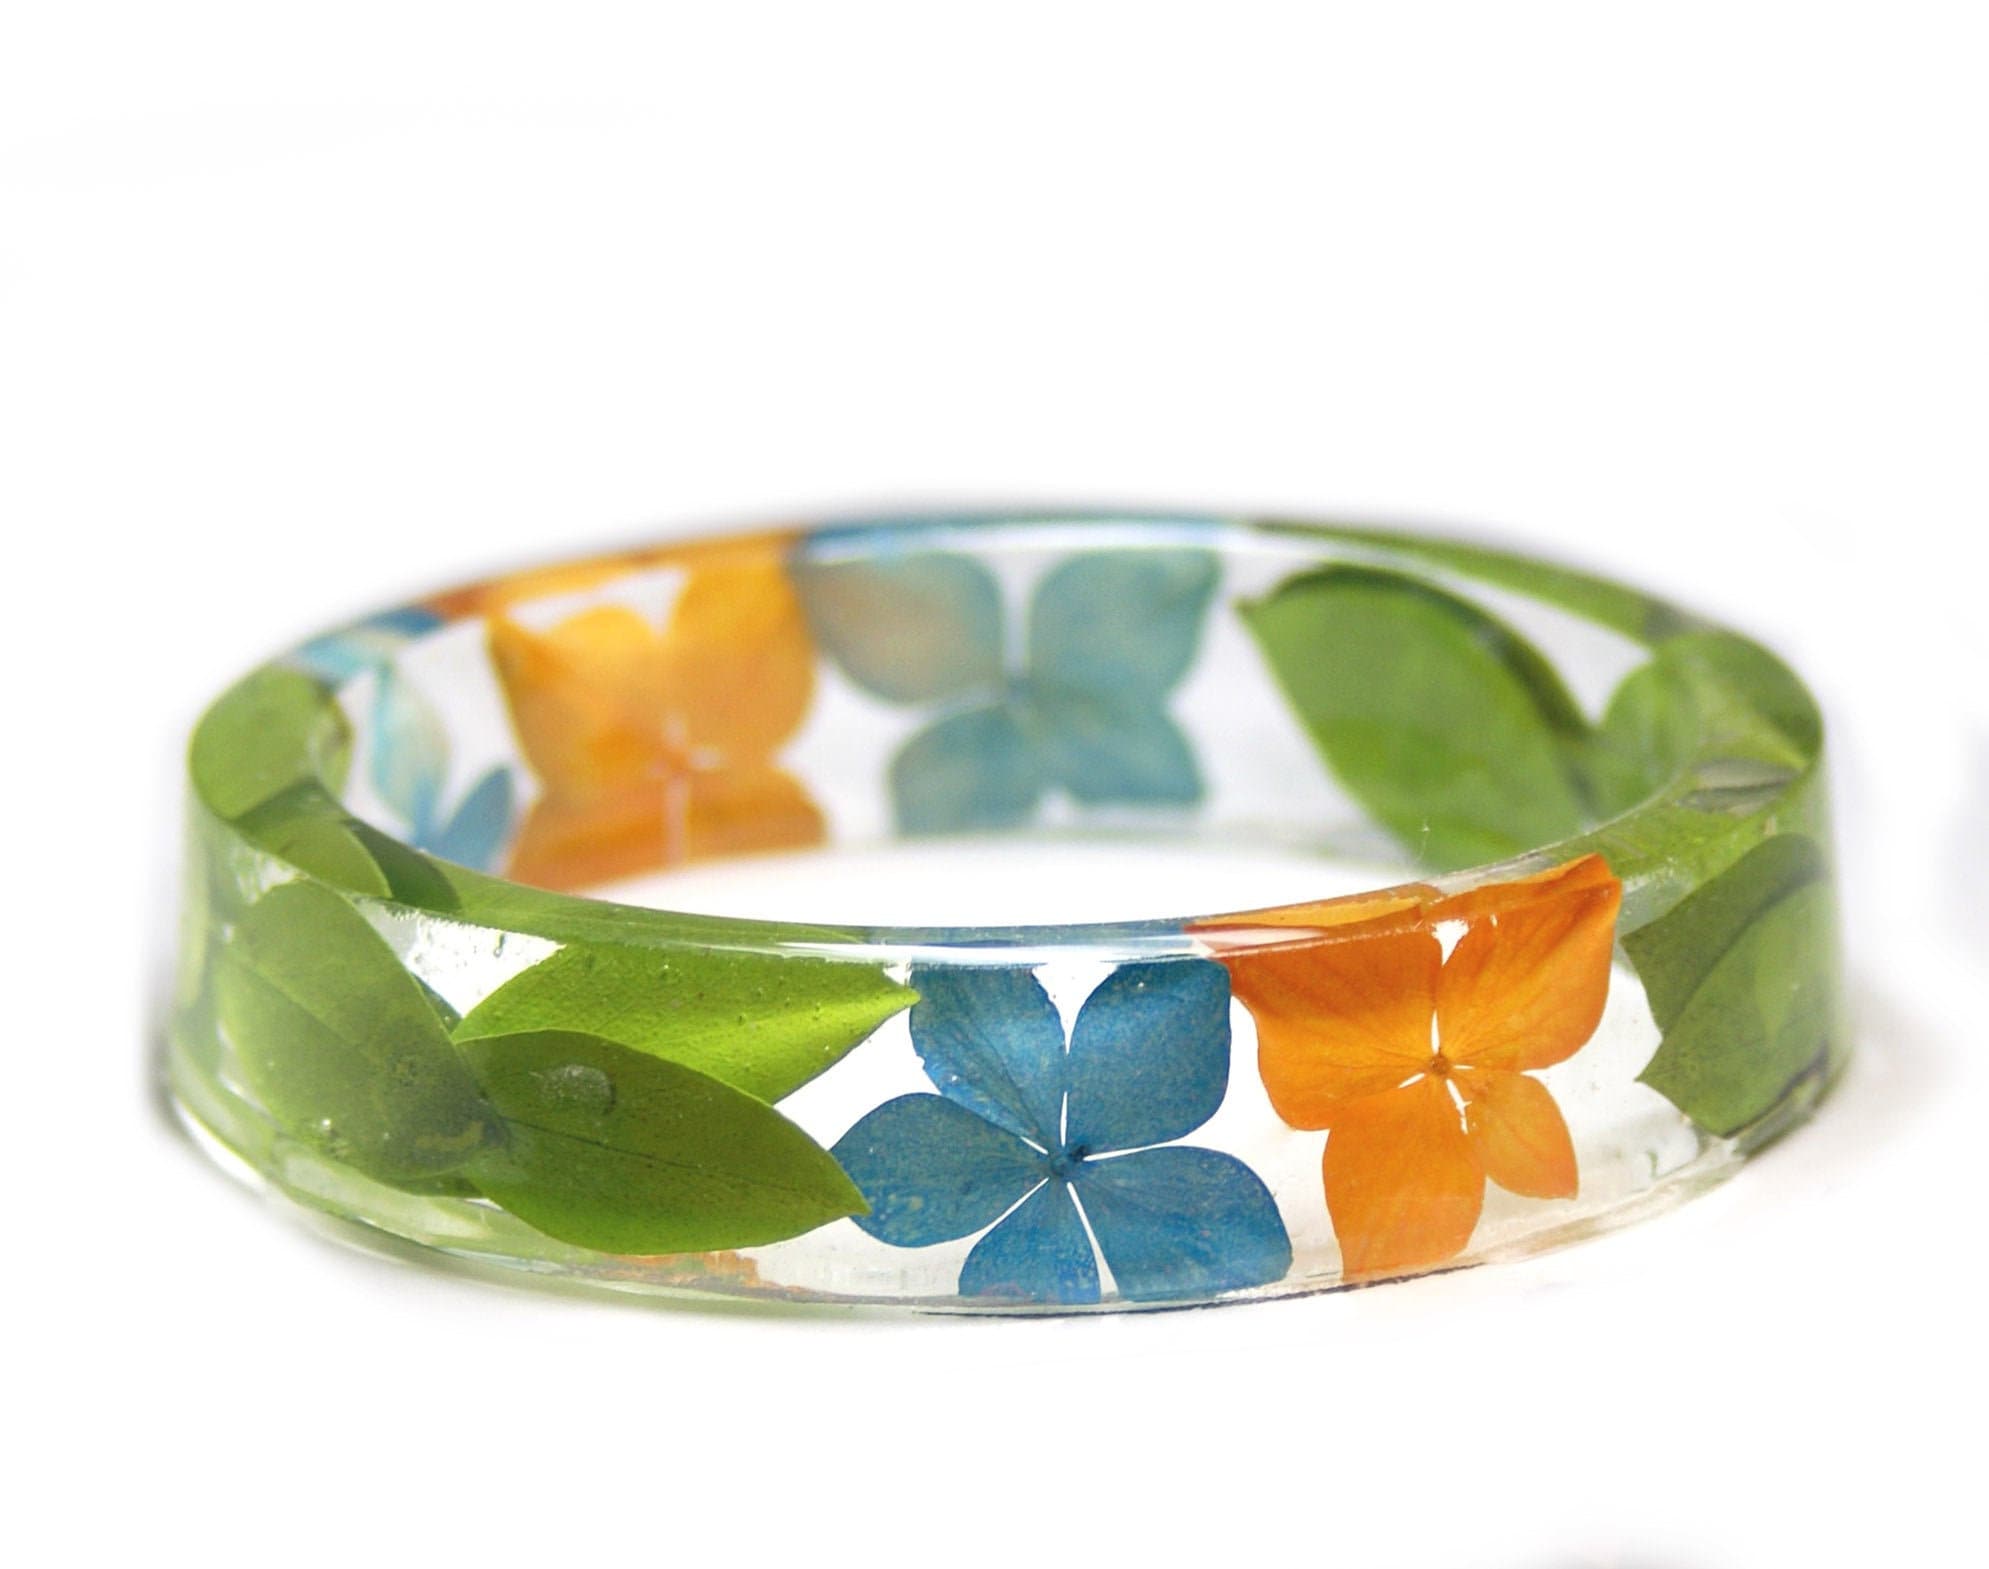 Flower Resin Bangle, botanical resin bracelet, yellow and green